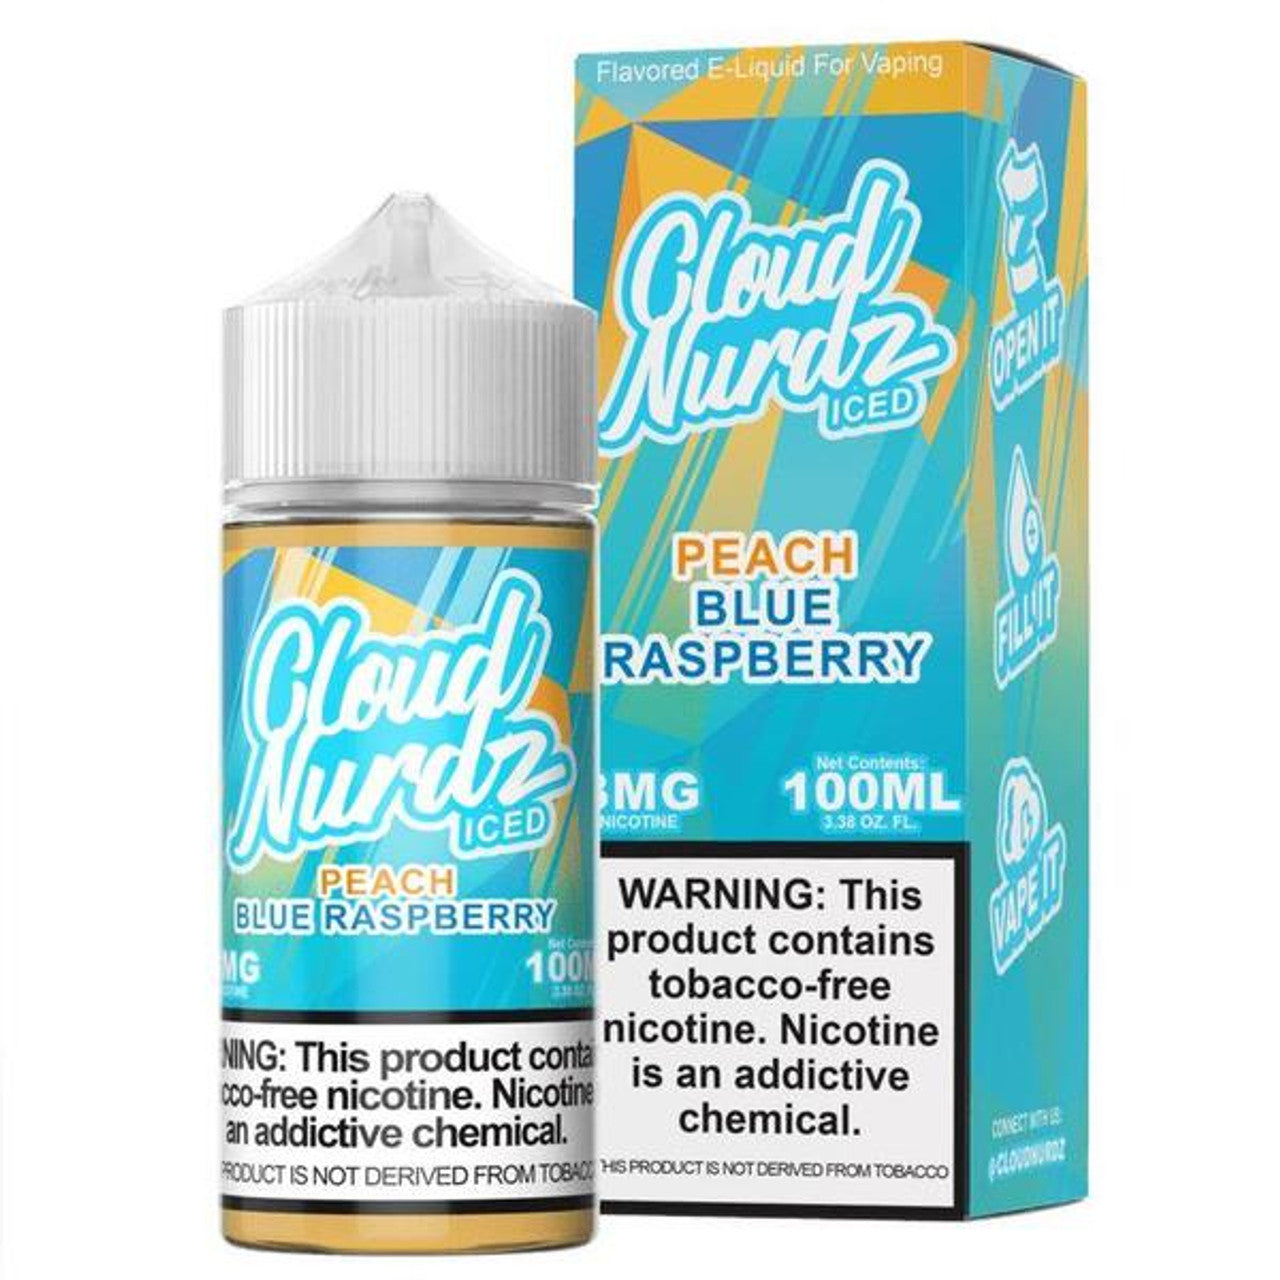 Cloud Nurdz Series E-Liquid 100mL Peach Blue Razz Iced with packaging